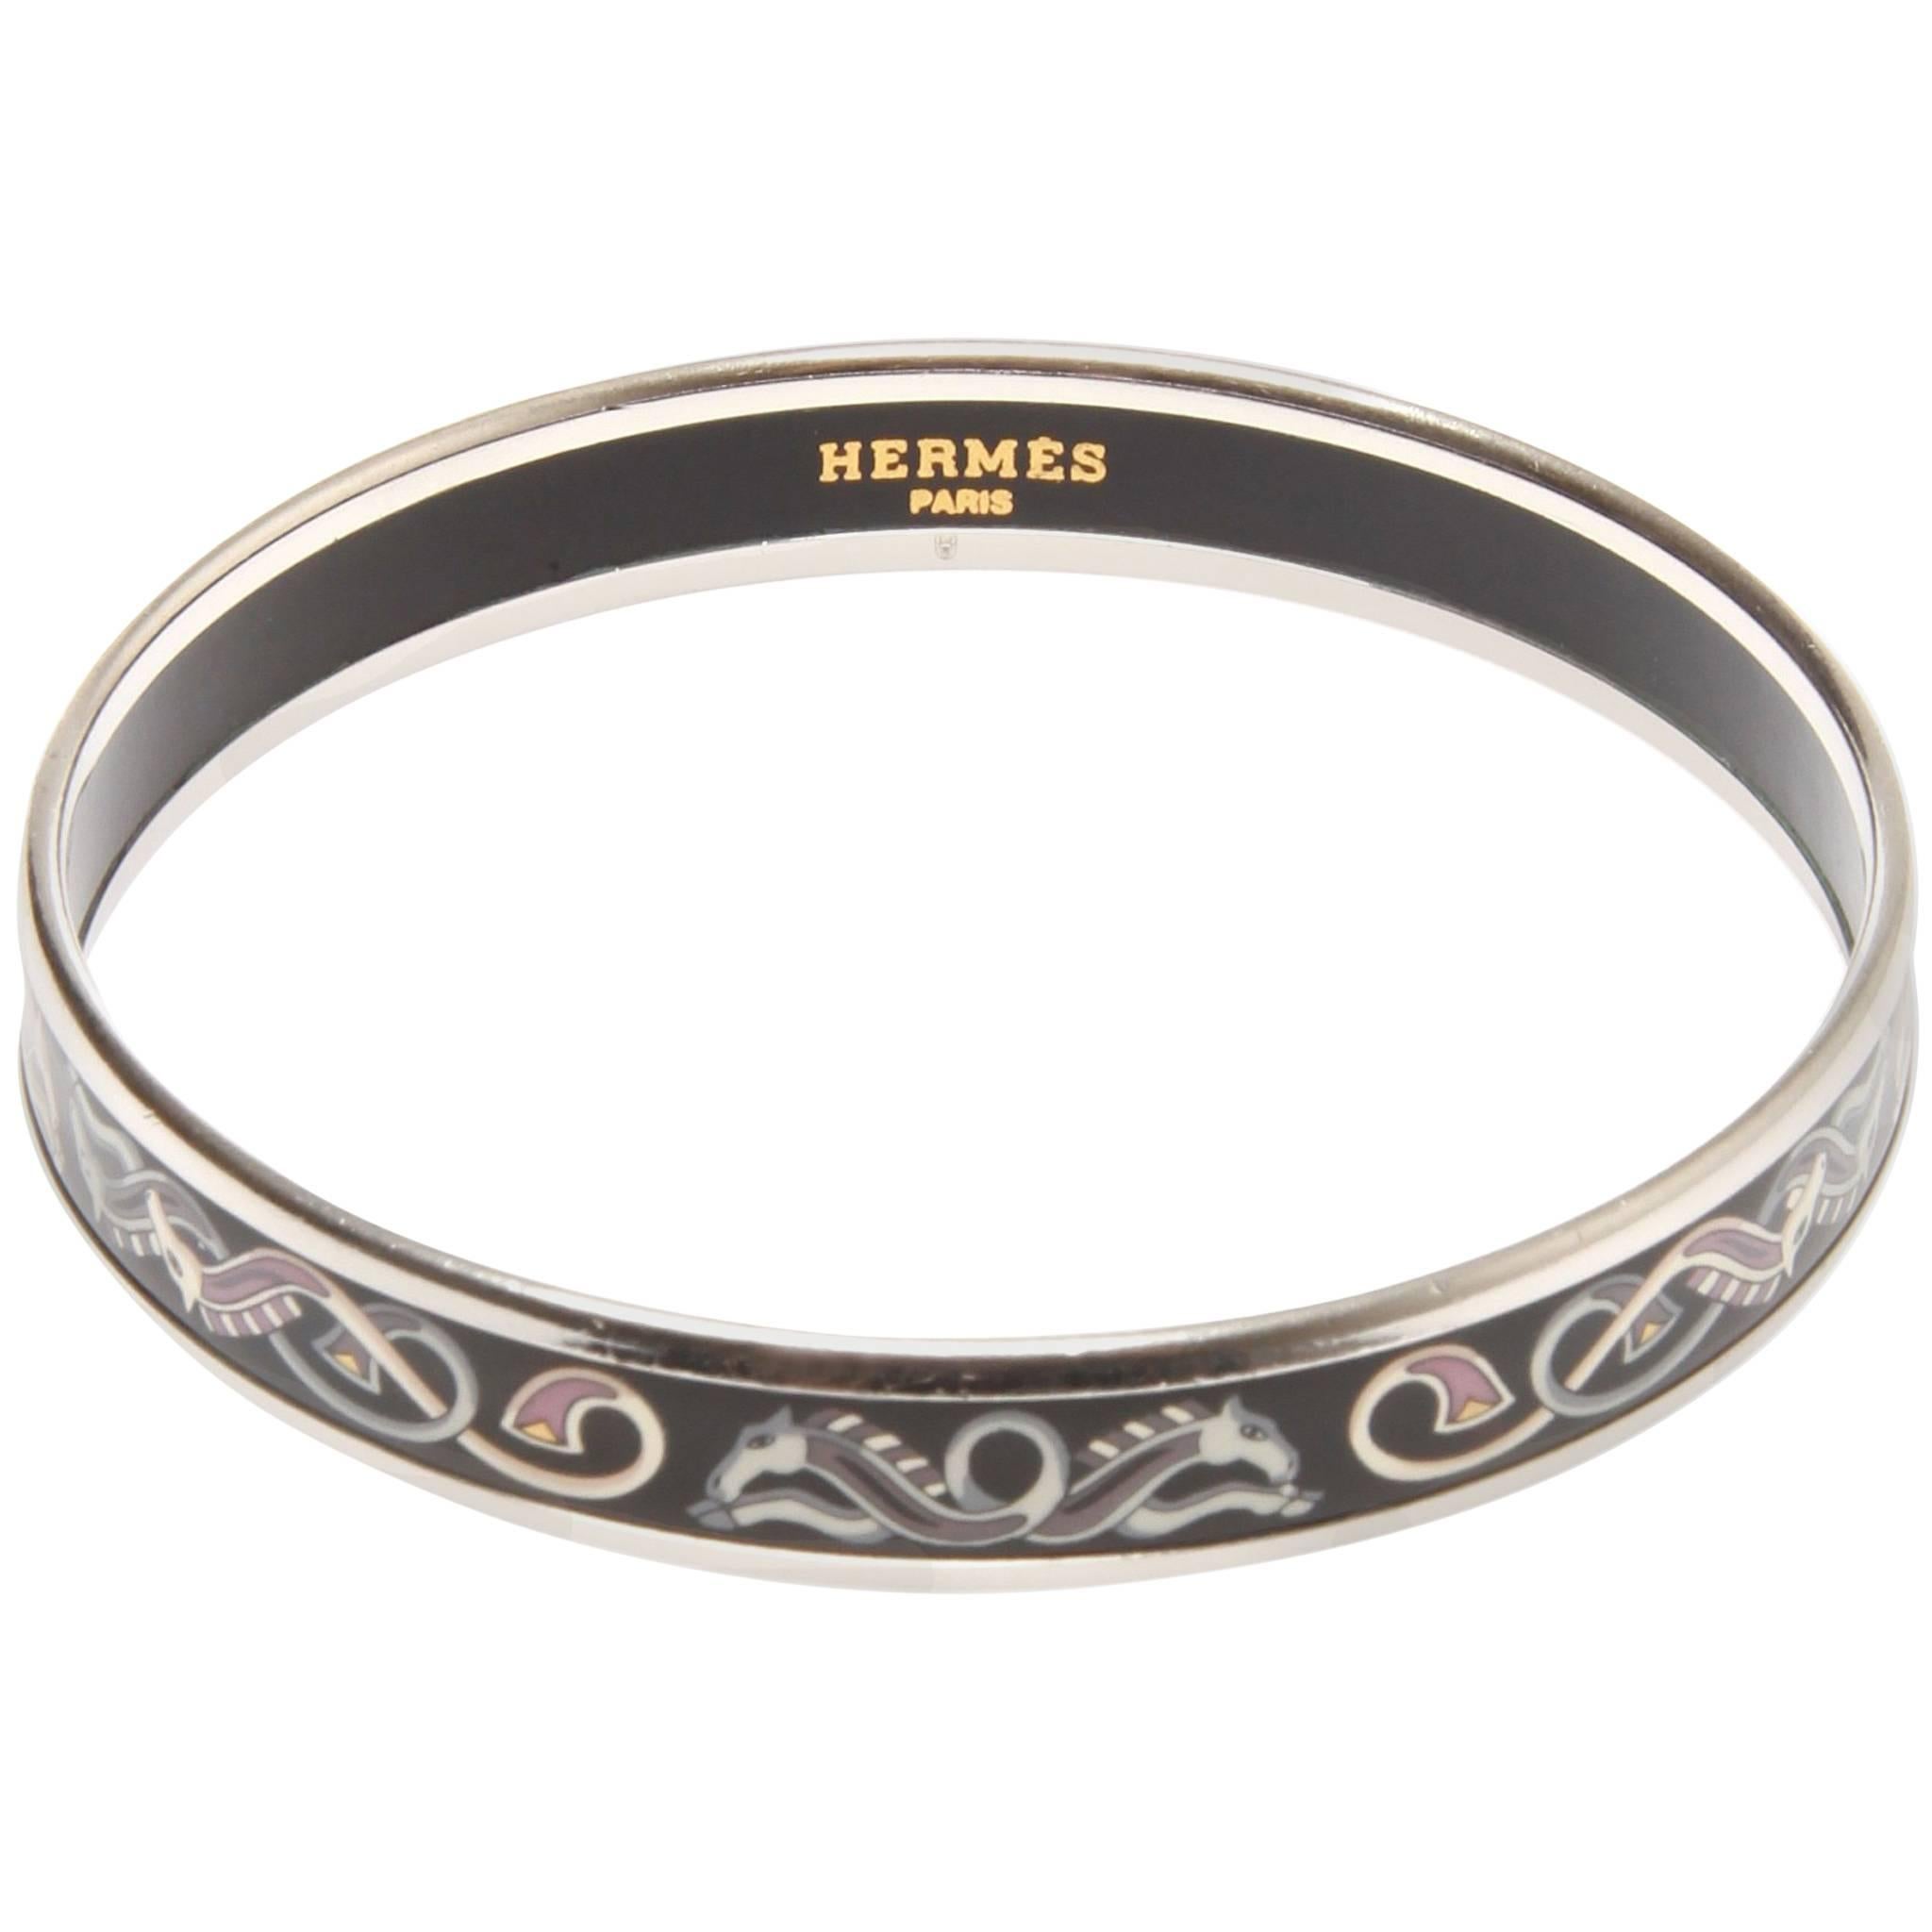 Hermes narrow printed enamel bracelet